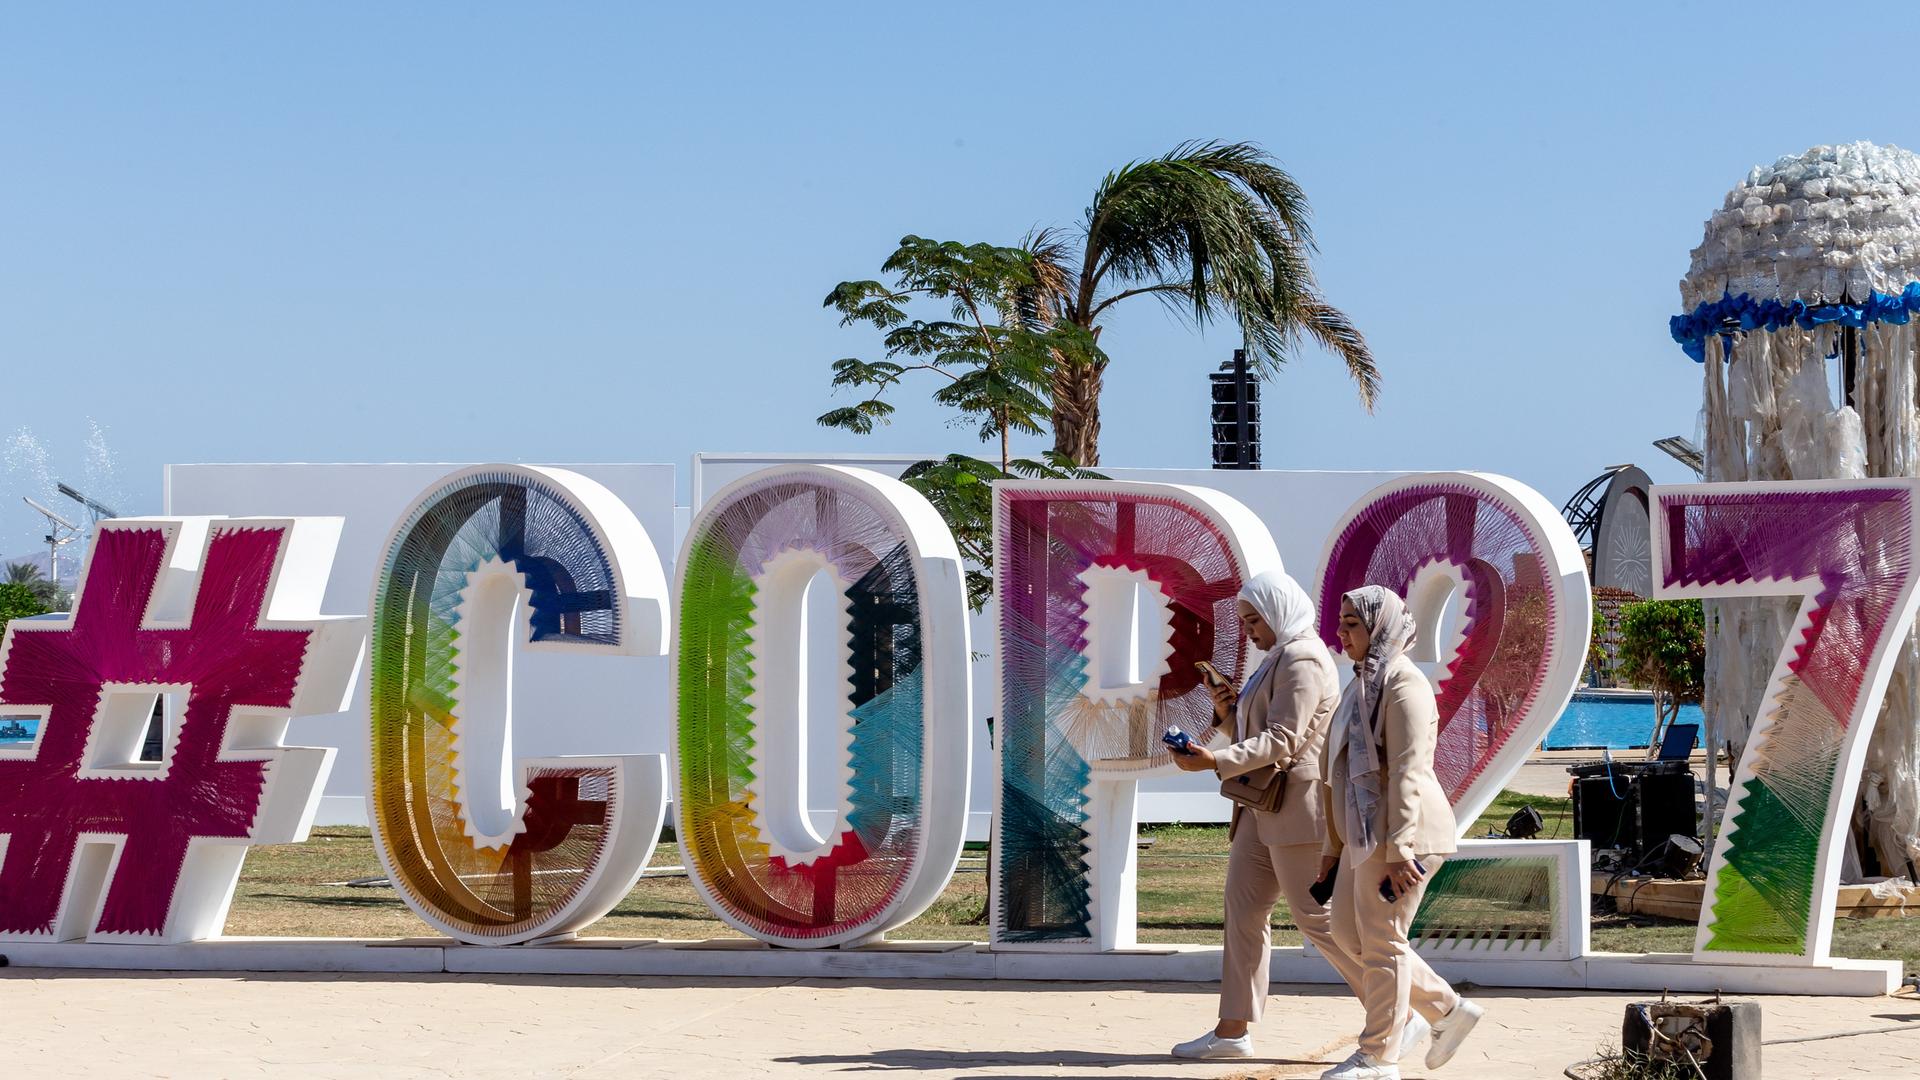 Das Logo von der Welt-Klima-Konferenz sind große Buchstaben und Zahlen "COP27". Das Logon ist vor Palmen aufgestellt.